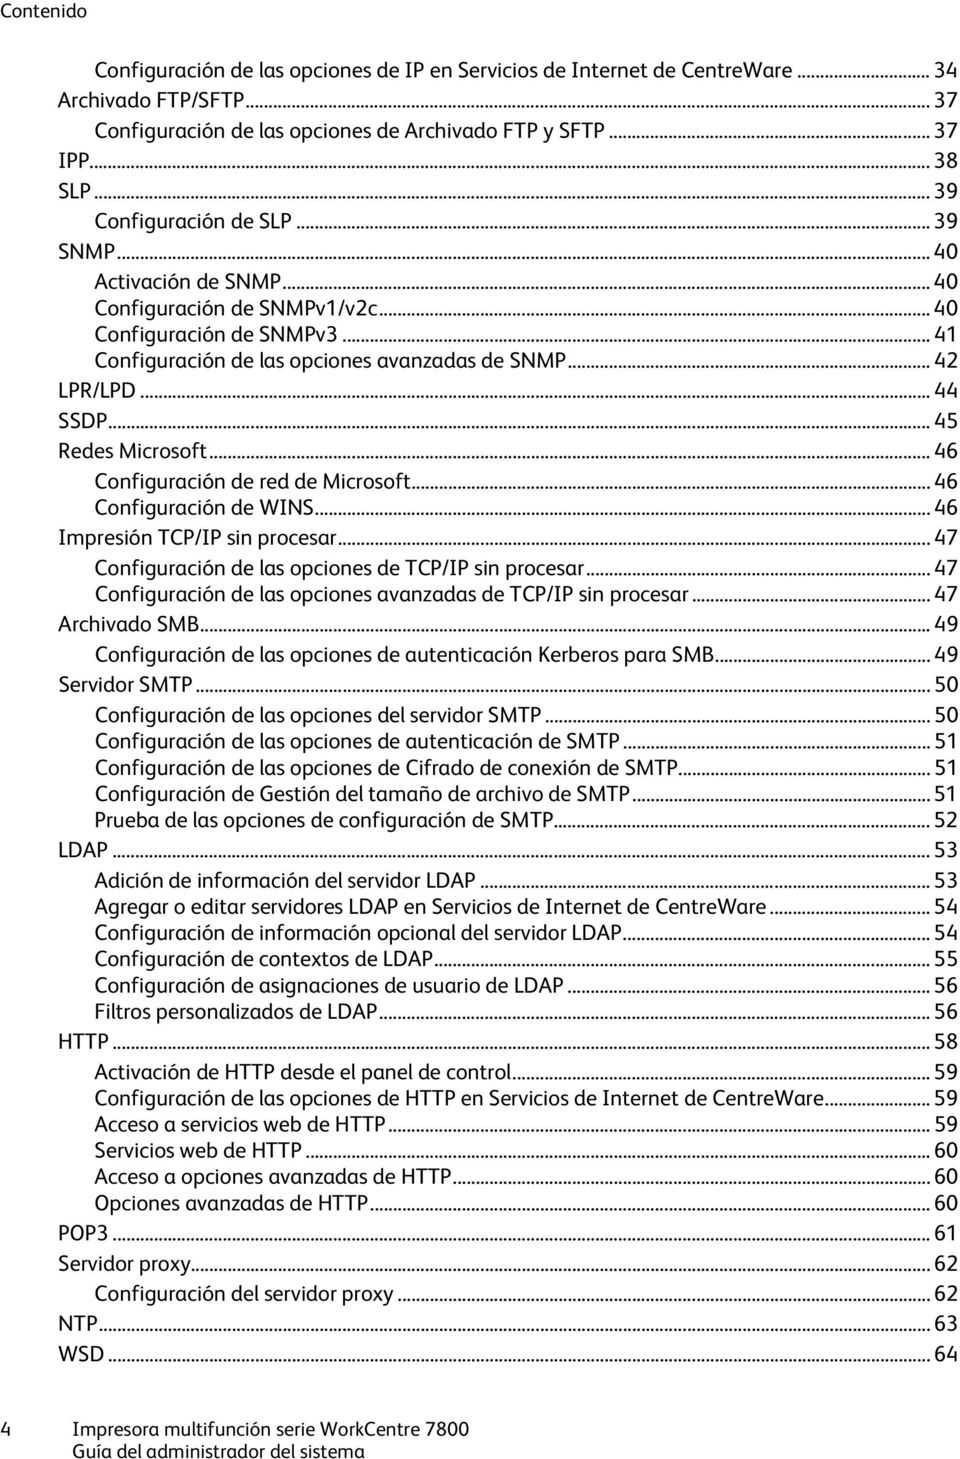 .. 44 SSDP... 45 Redes Microsoft... 46 Configuración de red de Microsoft... 46 Configuración de WINS... 46 Impresión TCP/IP sin procesar... 47 Configuración de las opciones de TCP/IP sin procesar.